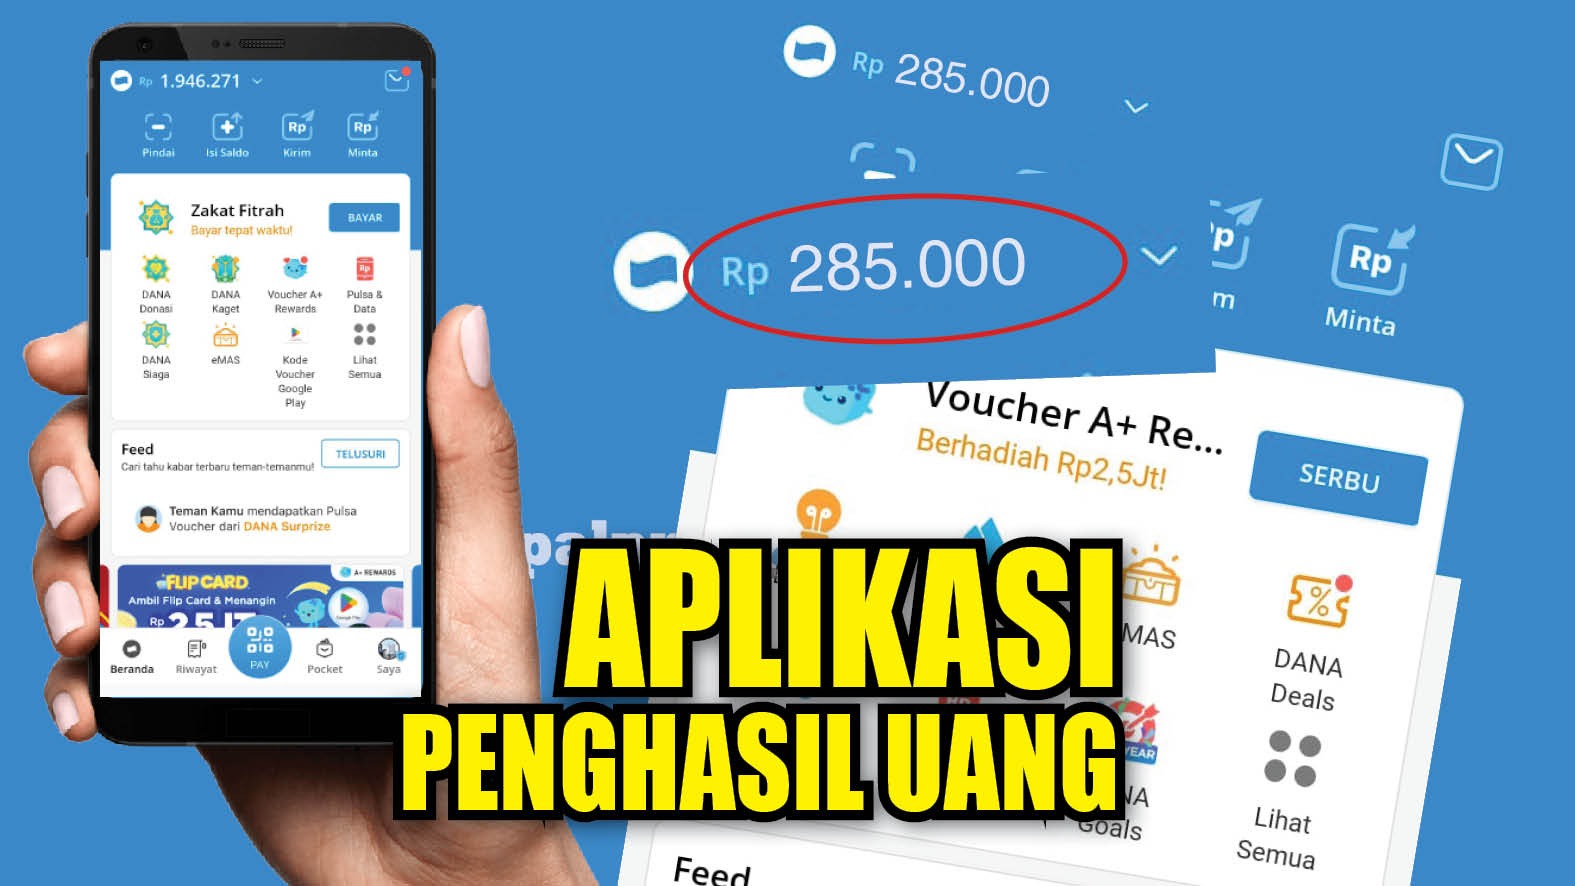 Terbukti Membayar! Aplikasi Penghasil Saldo DANA Gratis, Cuan Rp250.000 Langsung Cair ke Kantongmu